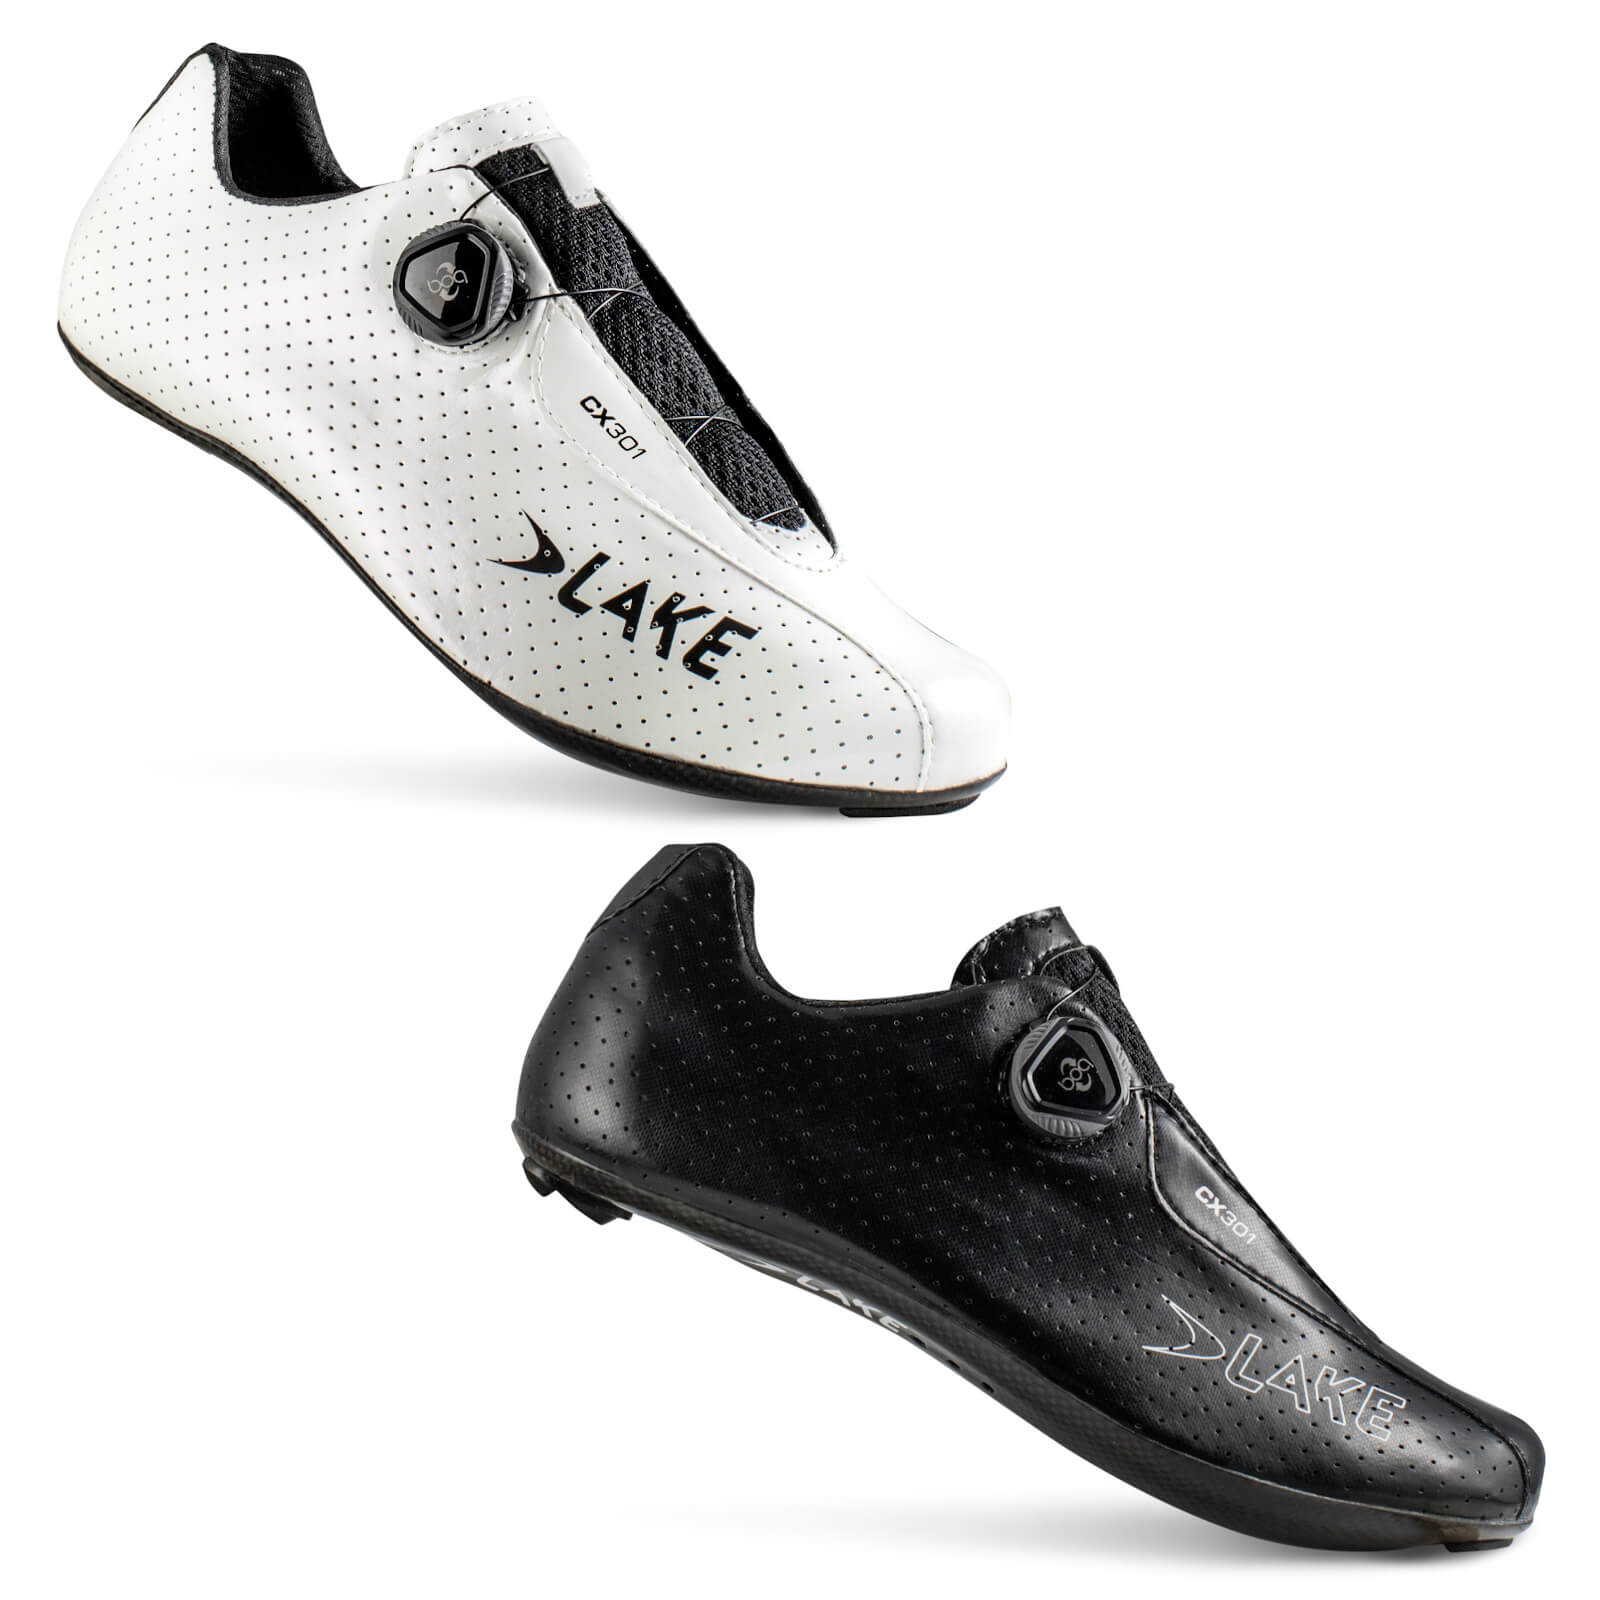 Lake CX301 Road Shoes - EU 47 - Black